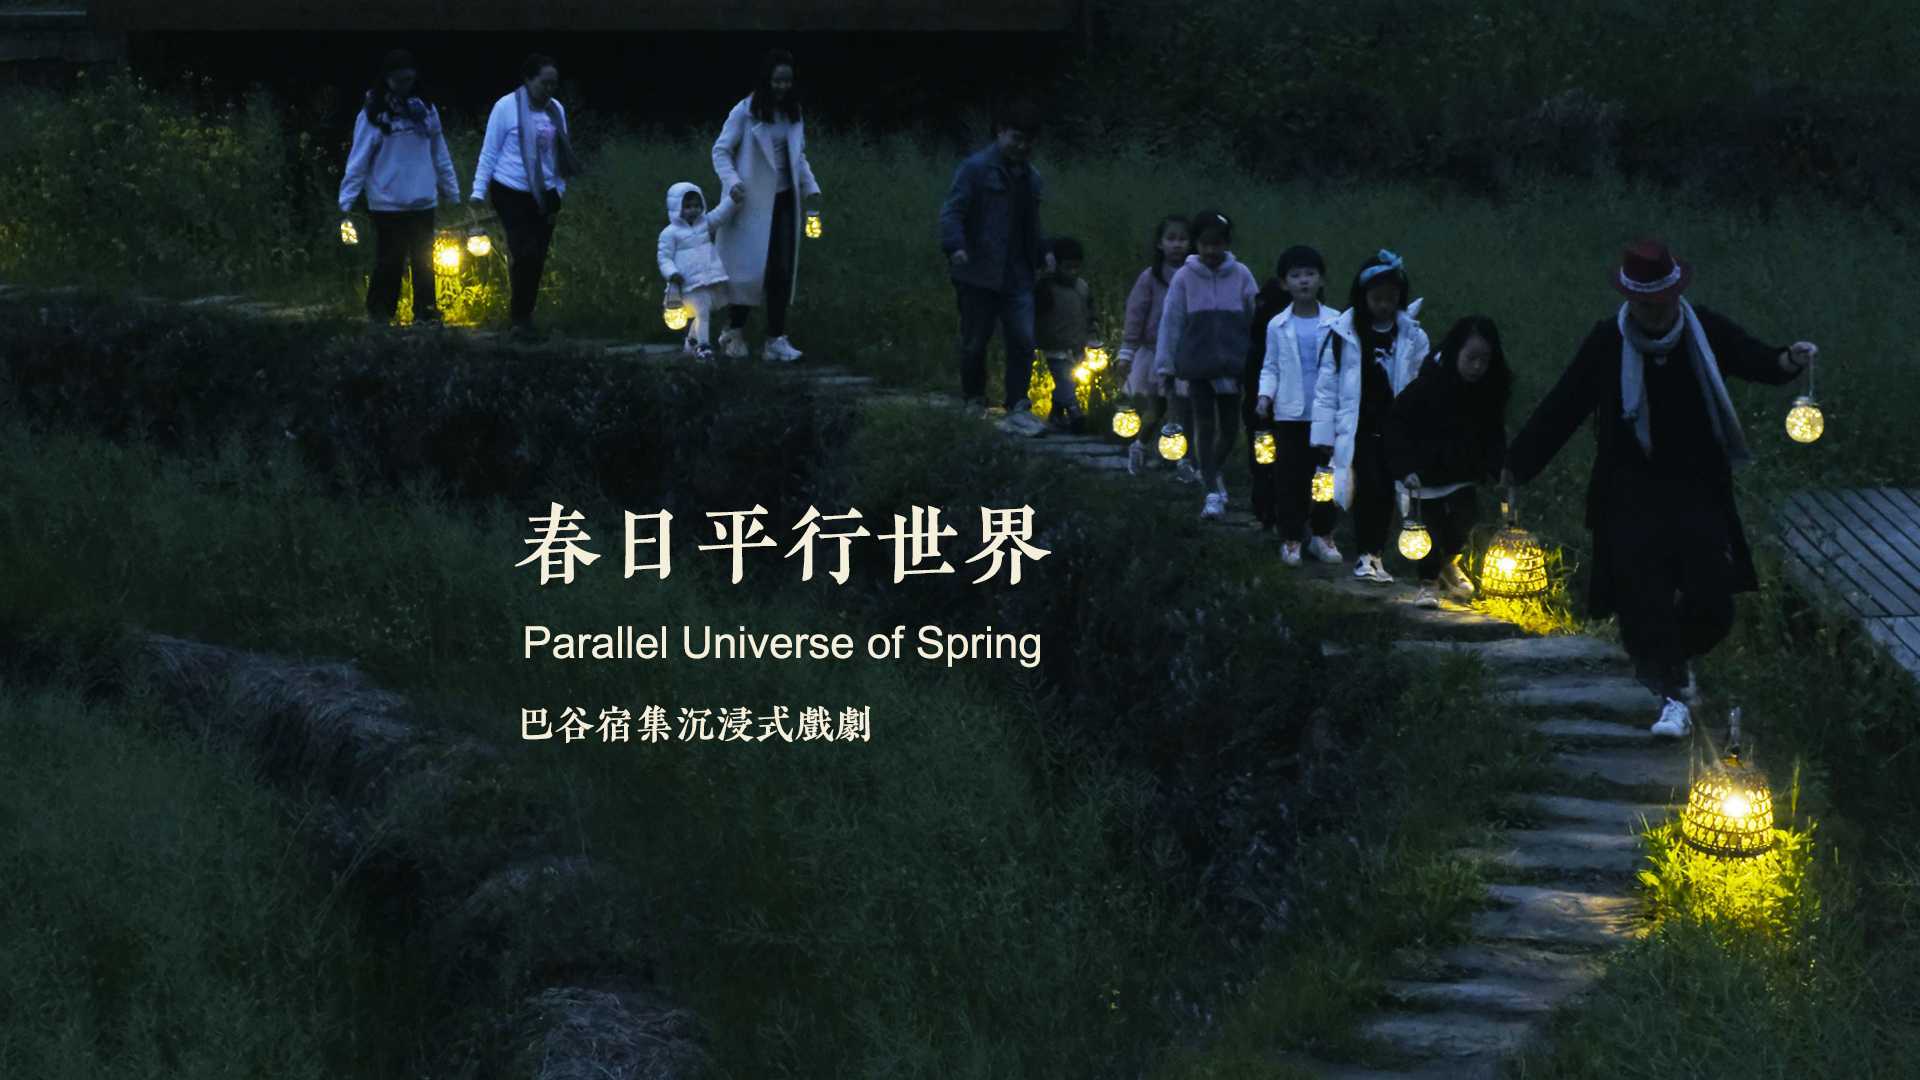 【游学·营地教育】2021年重庆巴谷《春日平行世界》